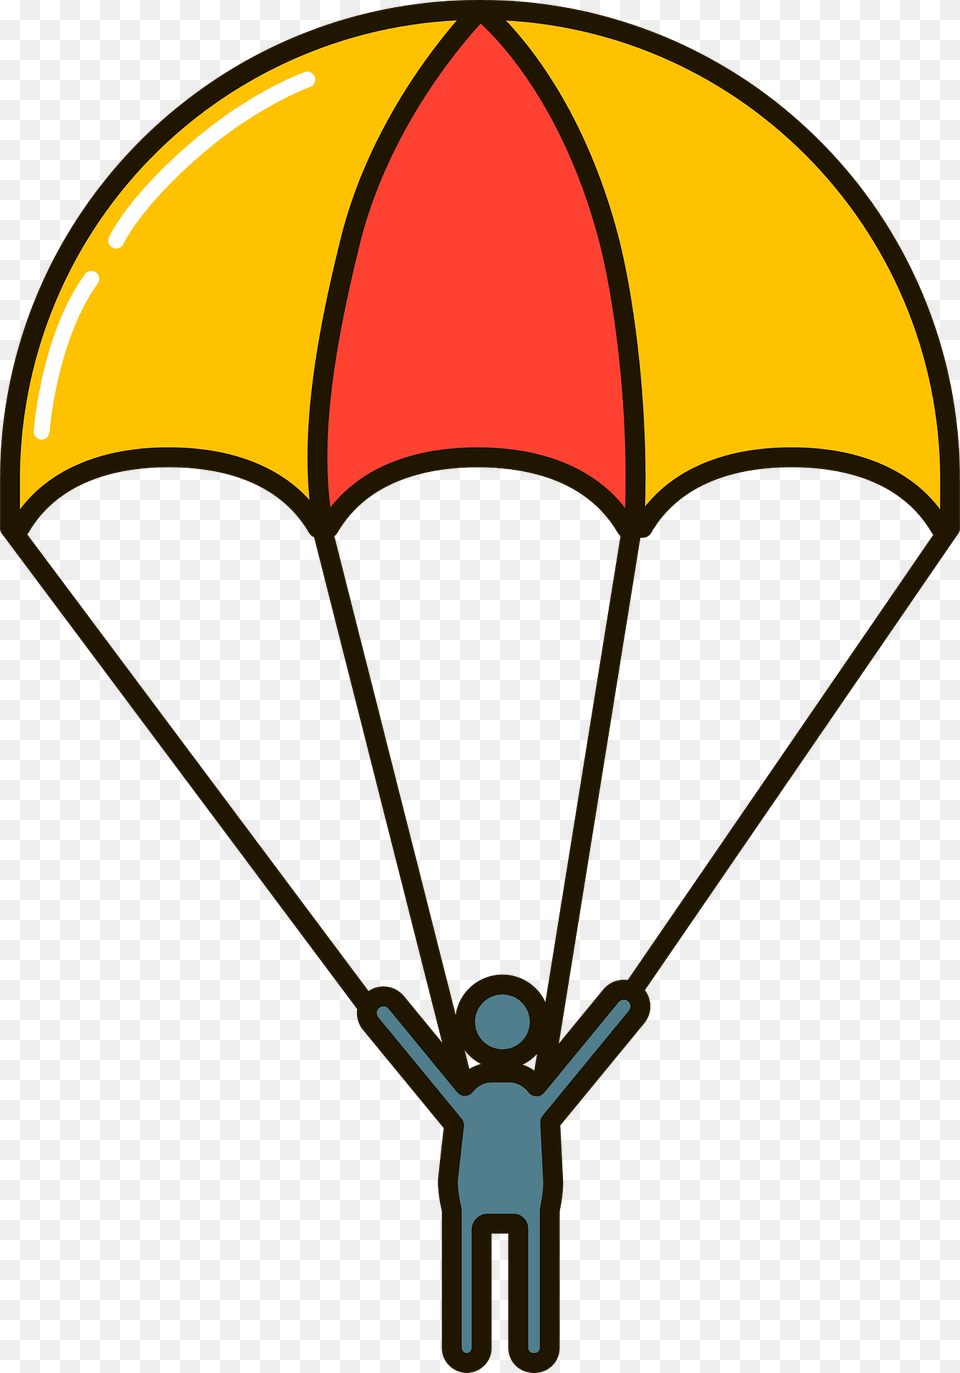 Parachutist Clipart, Parachute Free Transparent Png